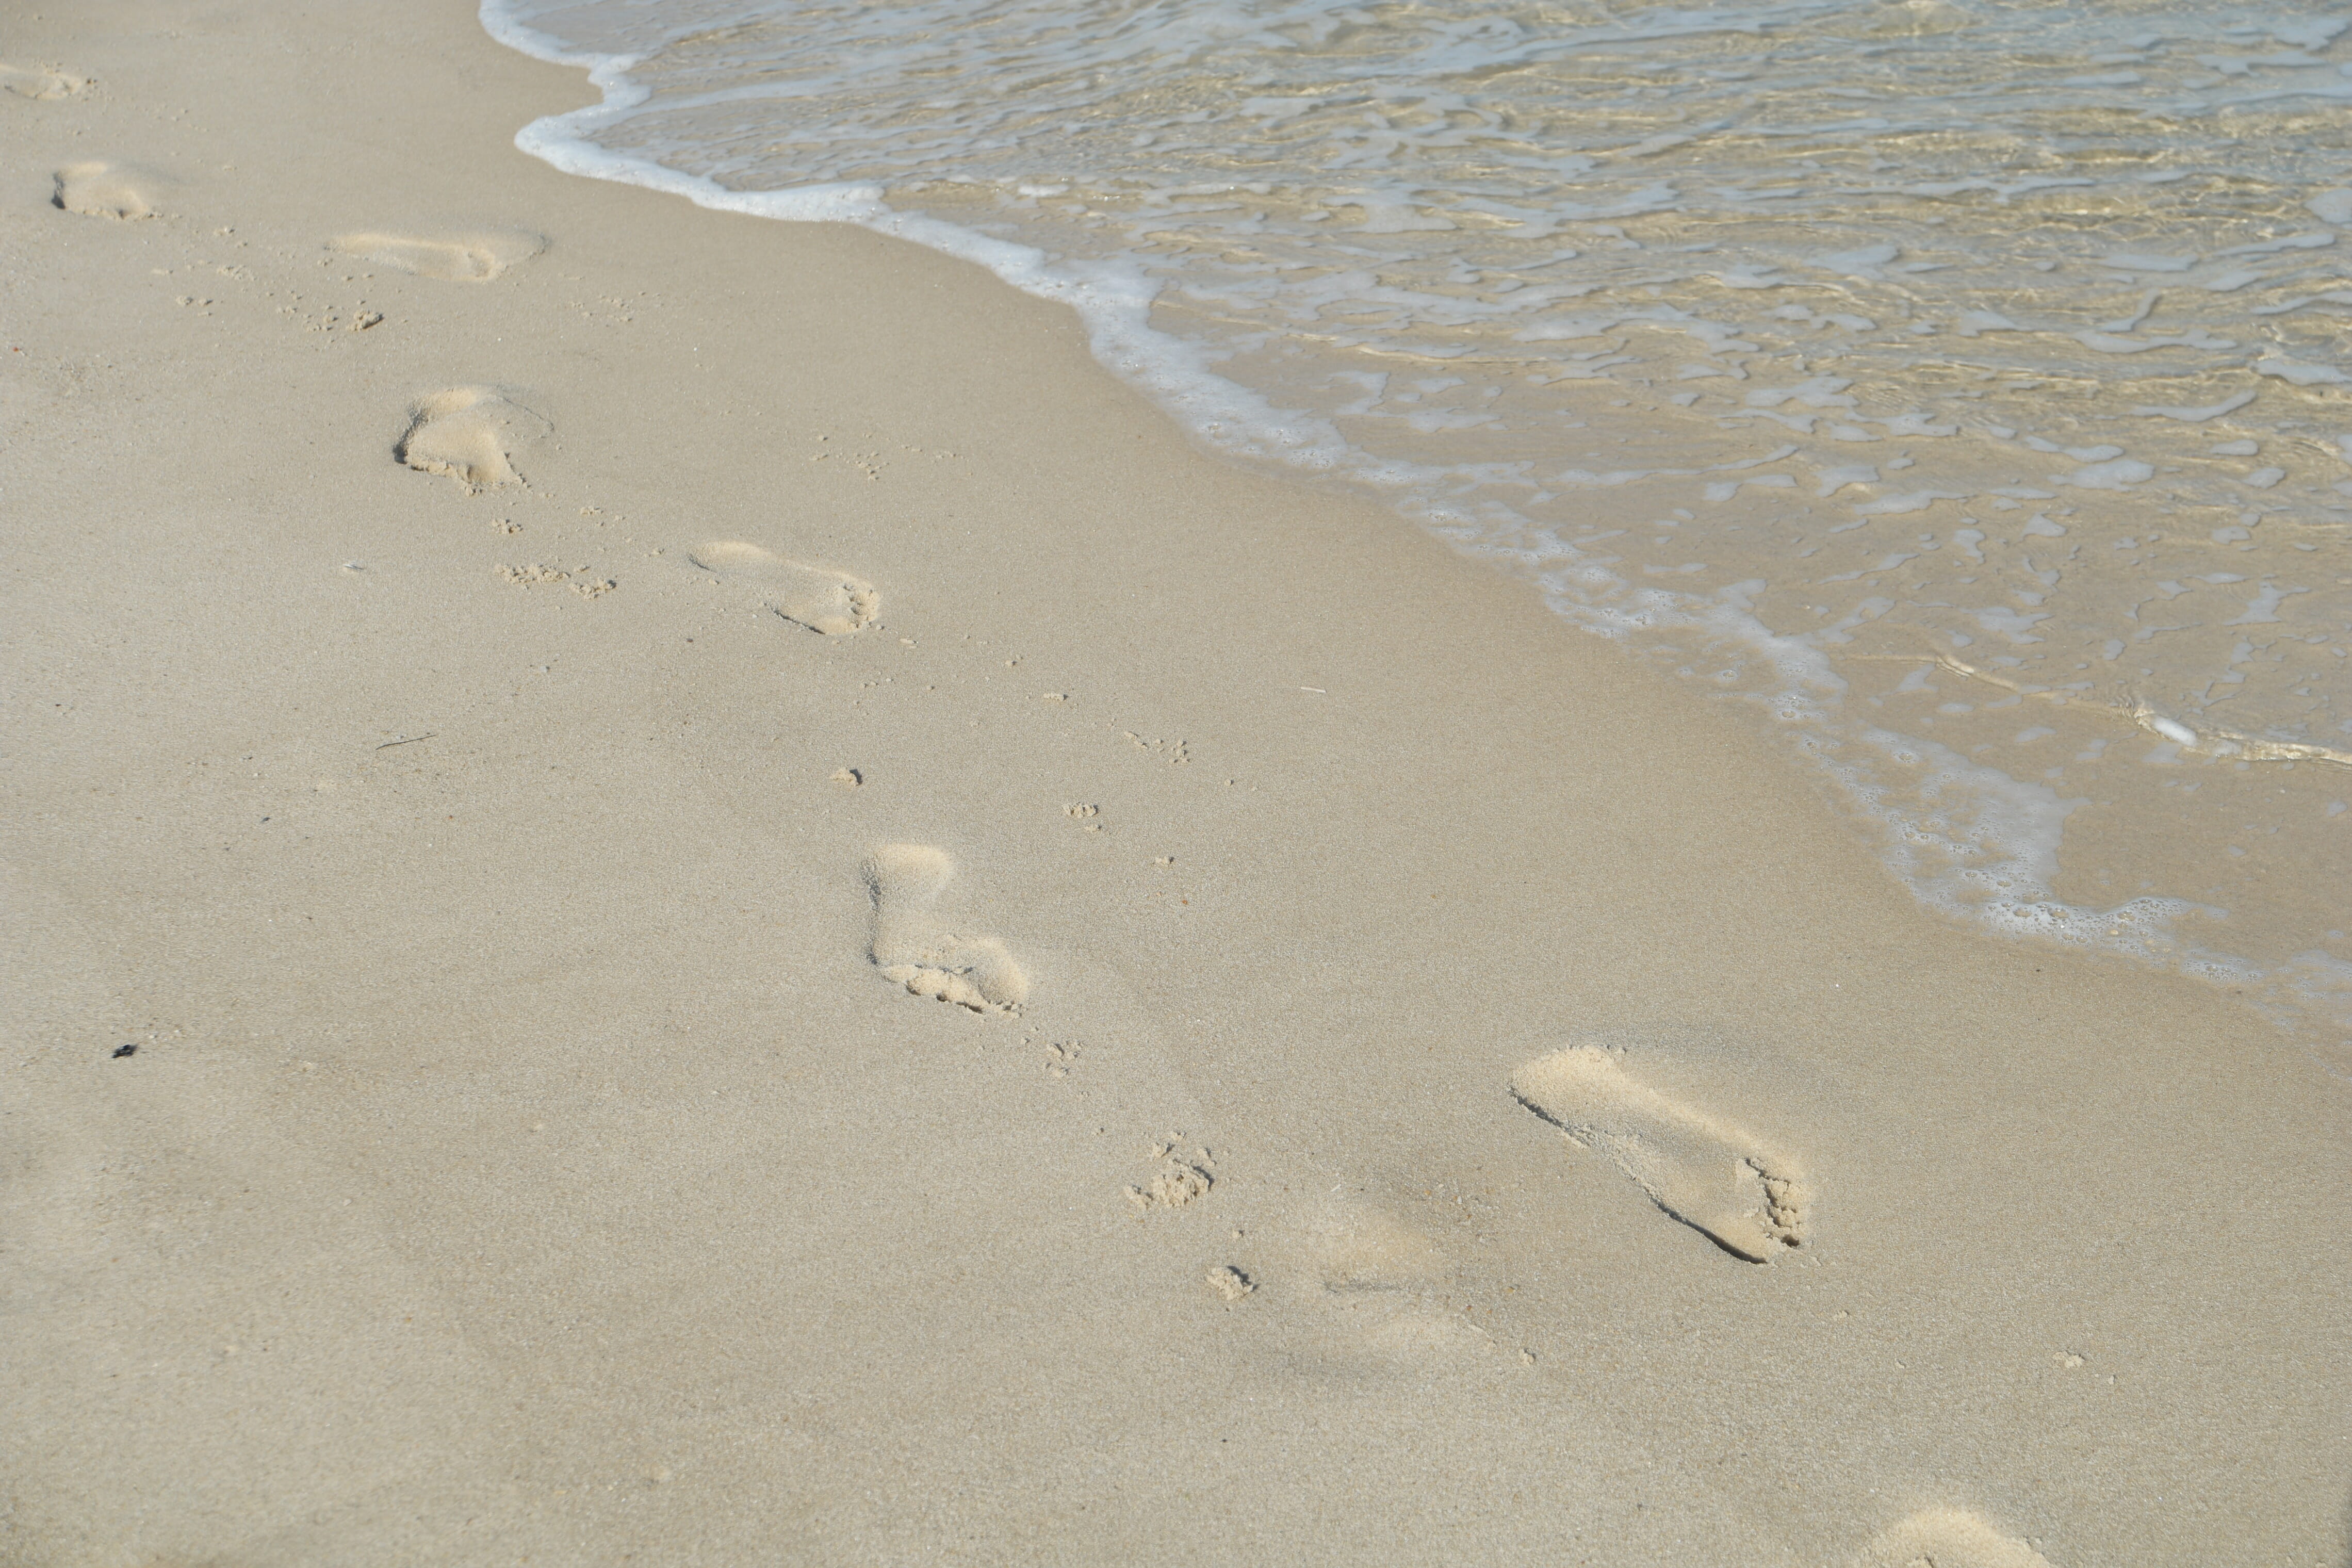 Beach, Sand, Sylt, Sea, Traces, beach sand, footprint, footprints